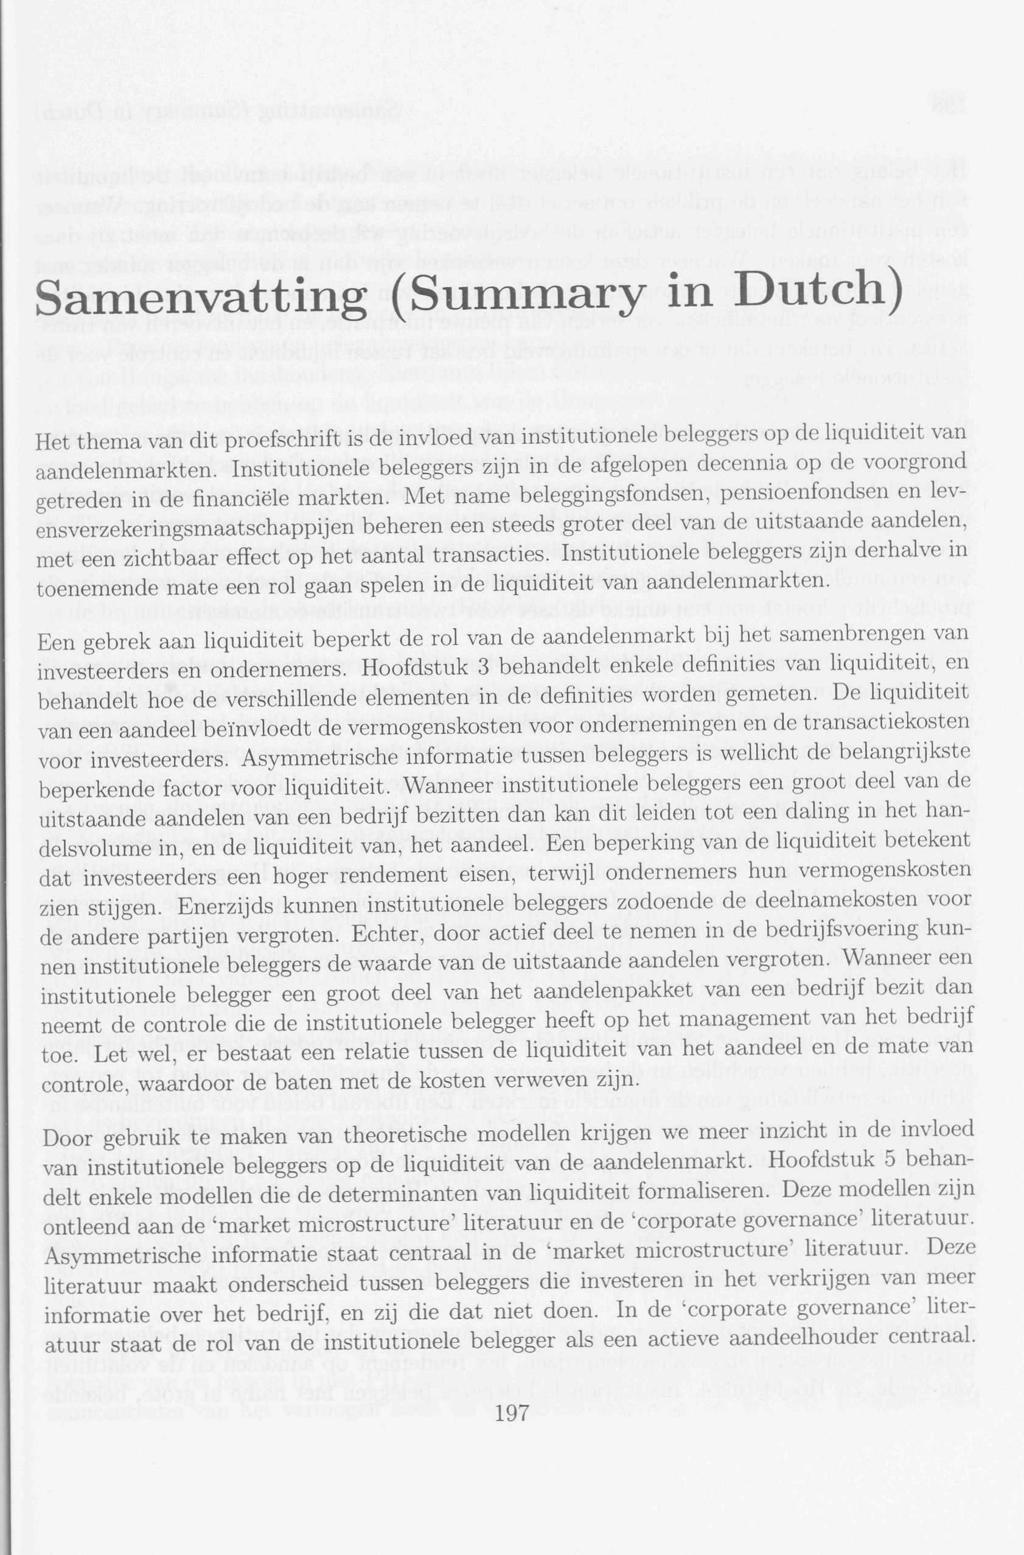 Samenvatting (Summary in Dutch) Het thema van dit proefschrift is de invloed van institutionele beleggers op de liquiditeit van aandelenmarkten.